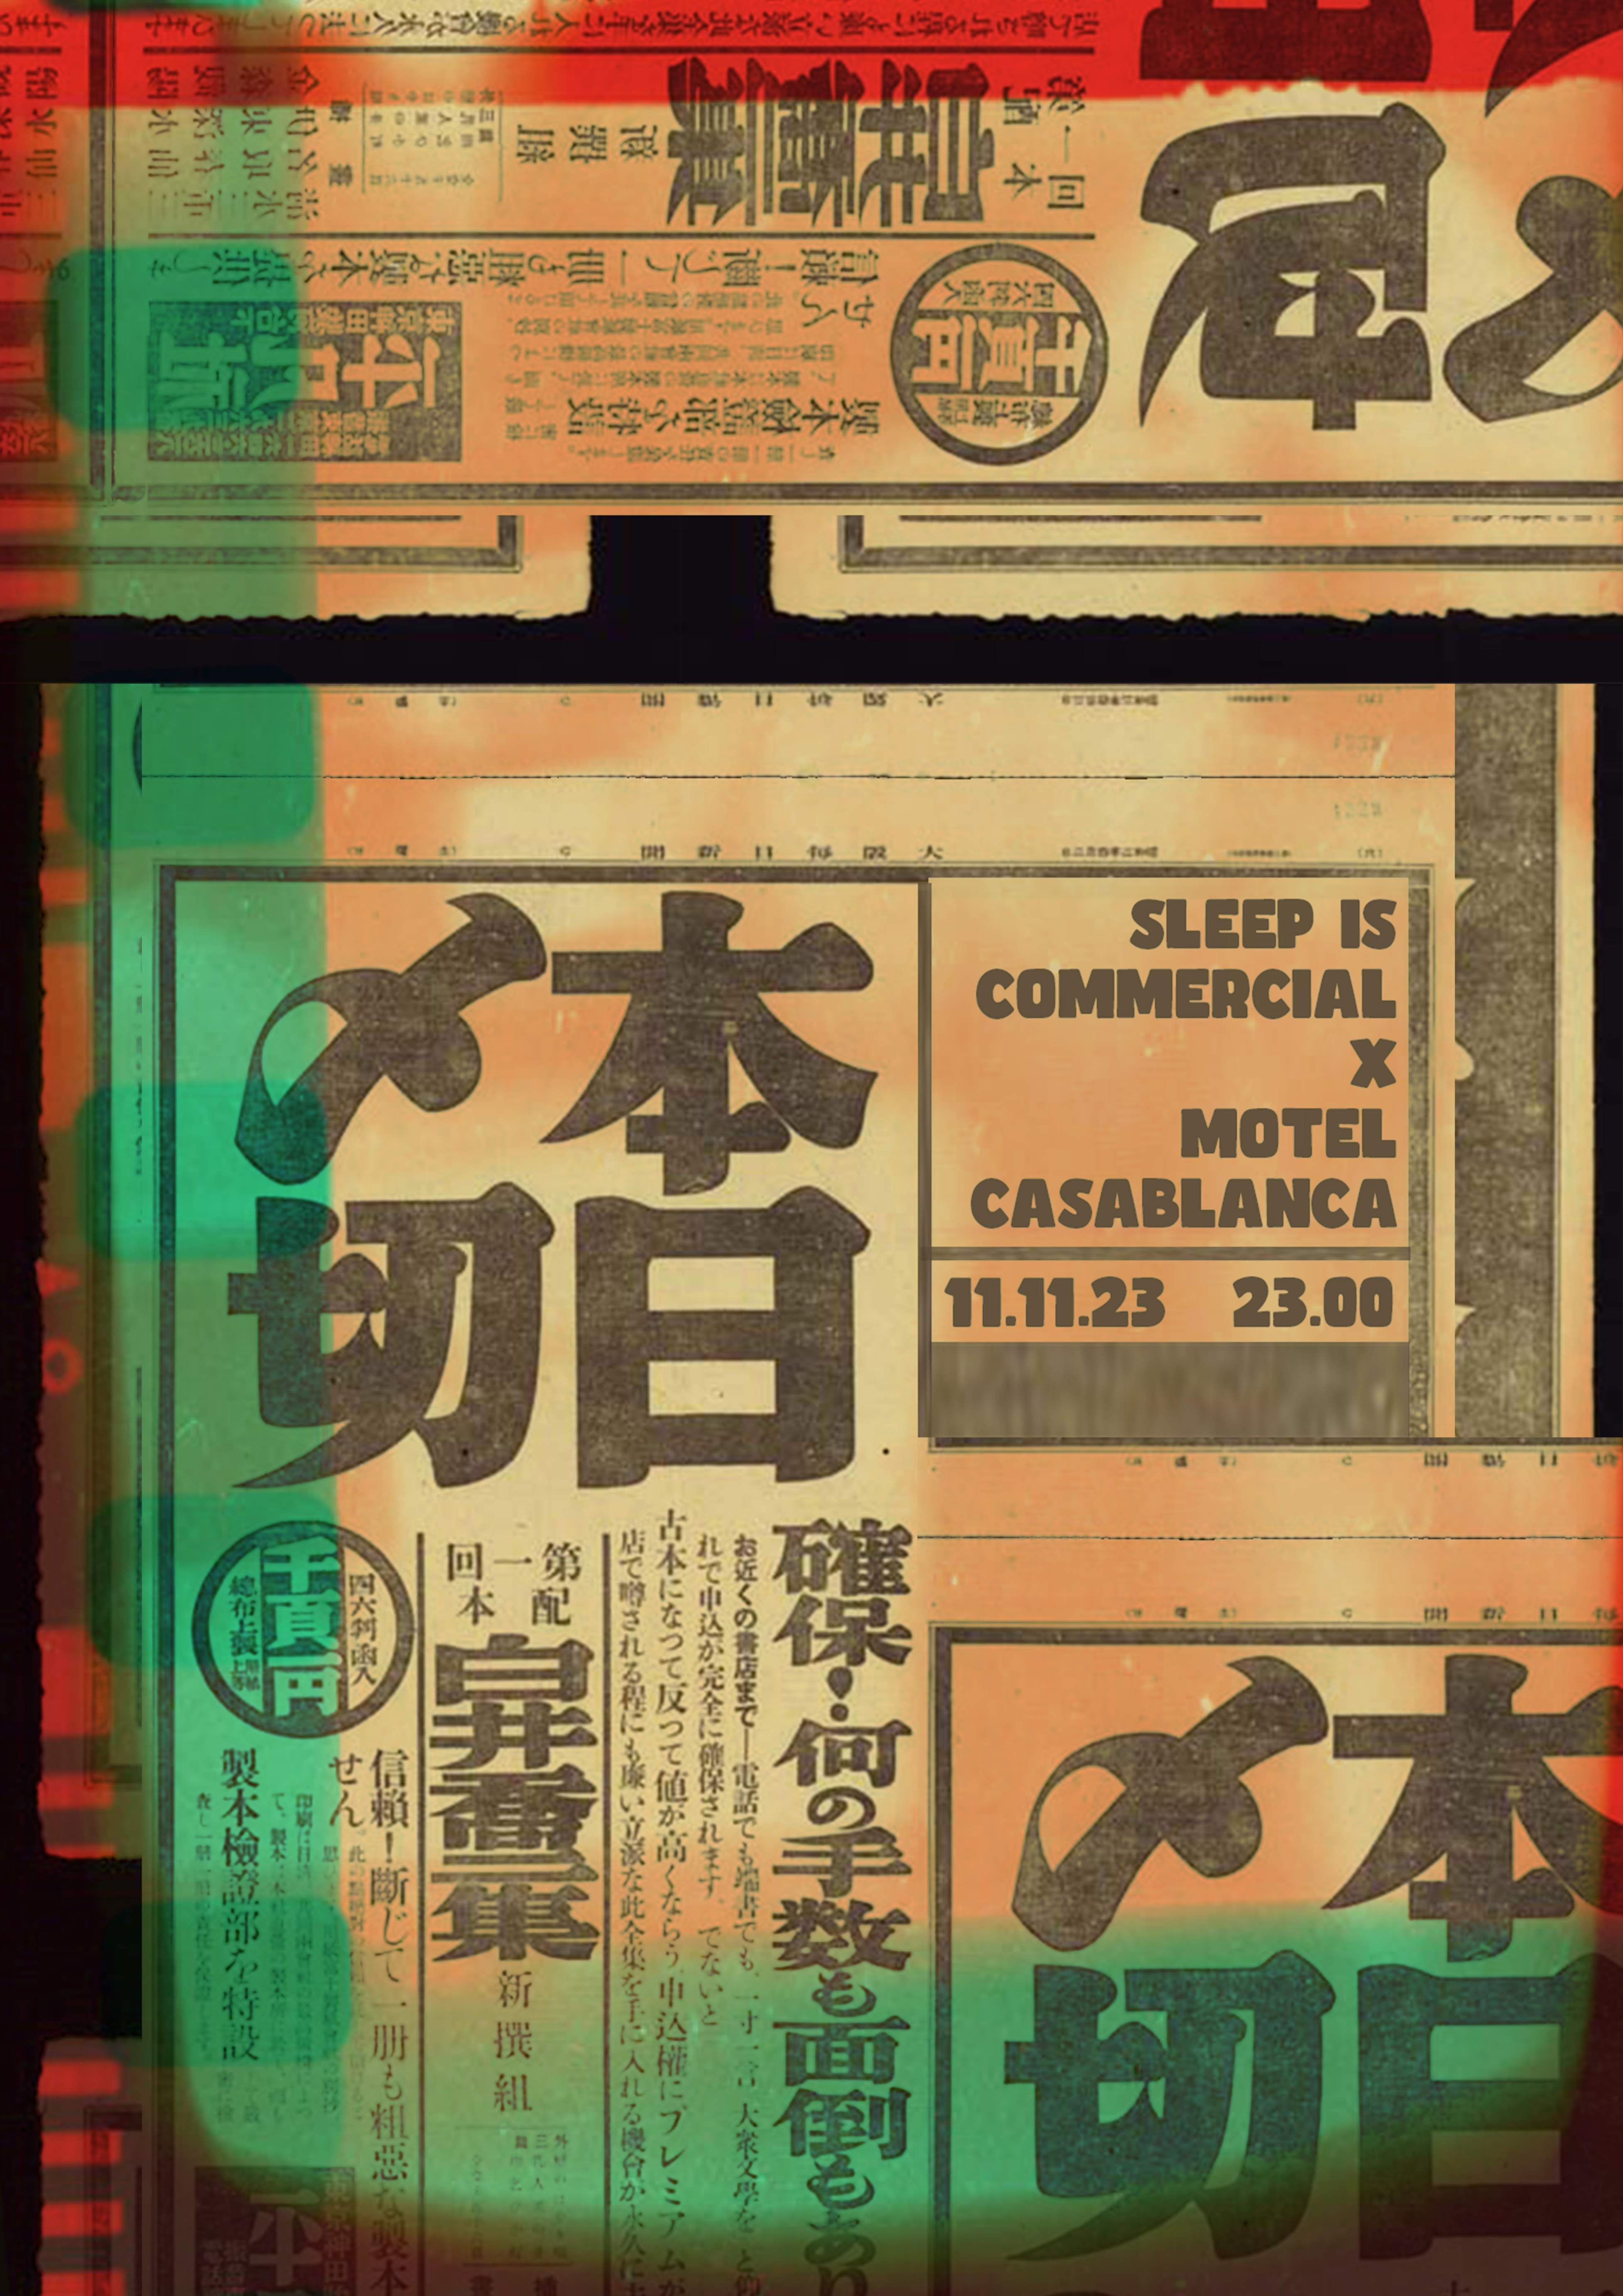 Sleep Is Commercial x Motel Casablanca - Página frontal